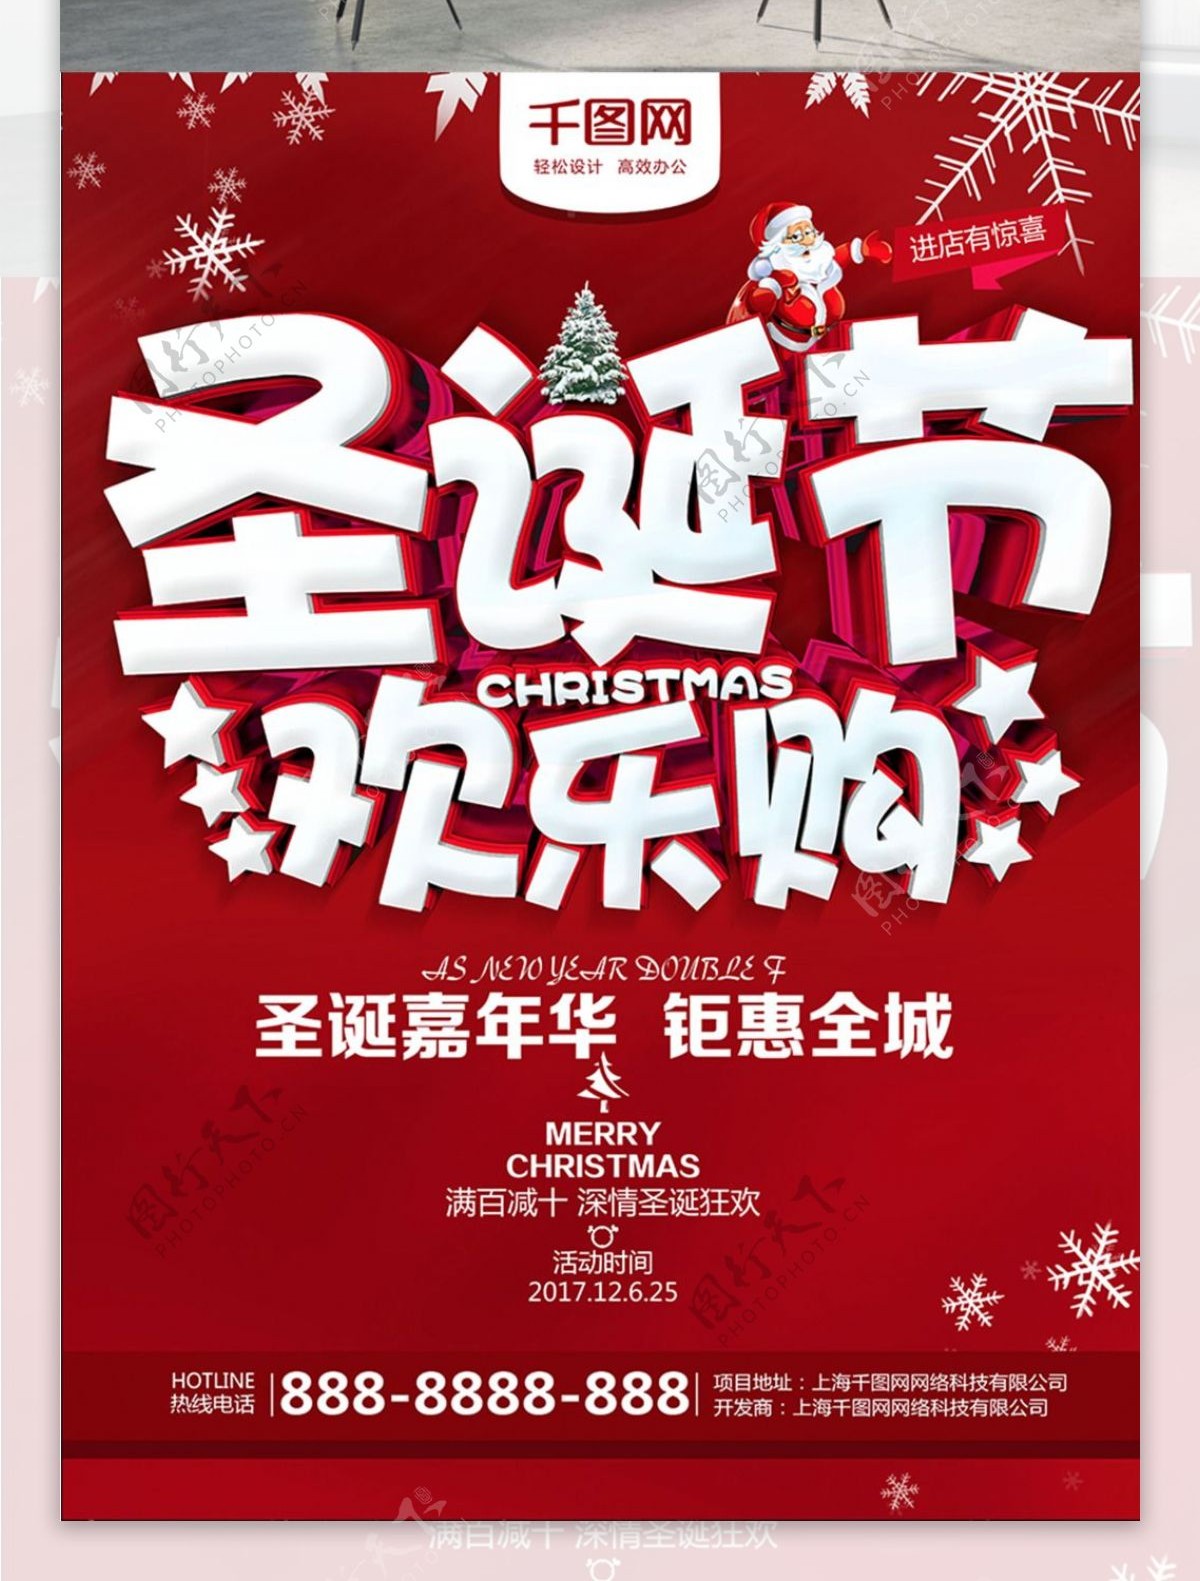 红色促销圣诞节欢乐购宣传海报商场促销